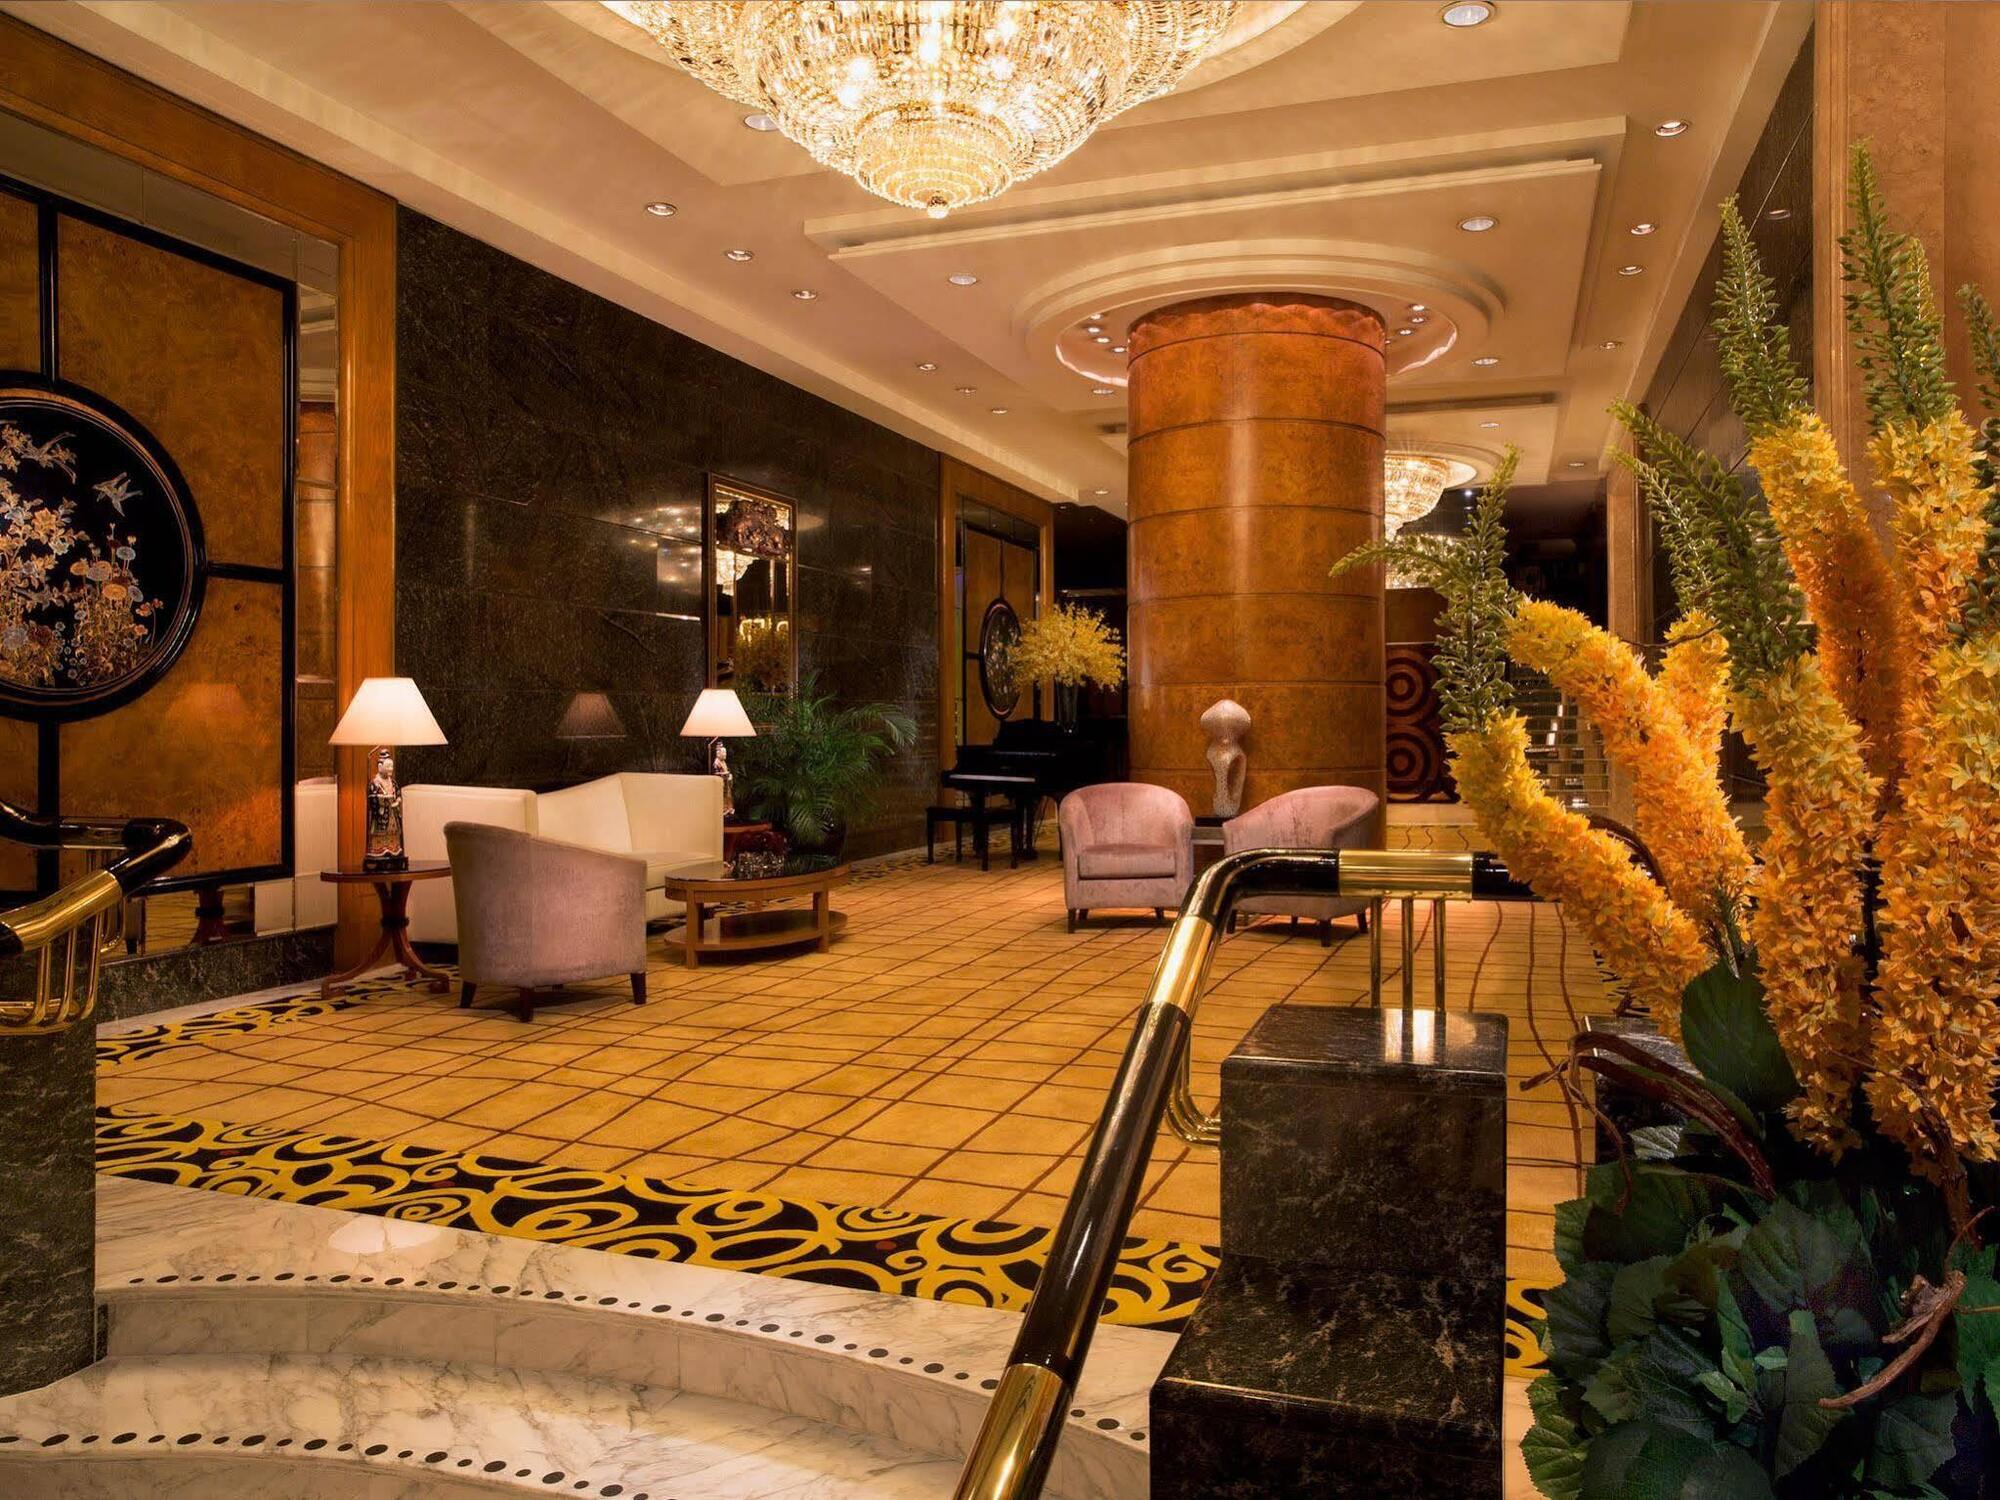 The Royal Pacific Hotel & Towers Hong Kong Bagian luar foto